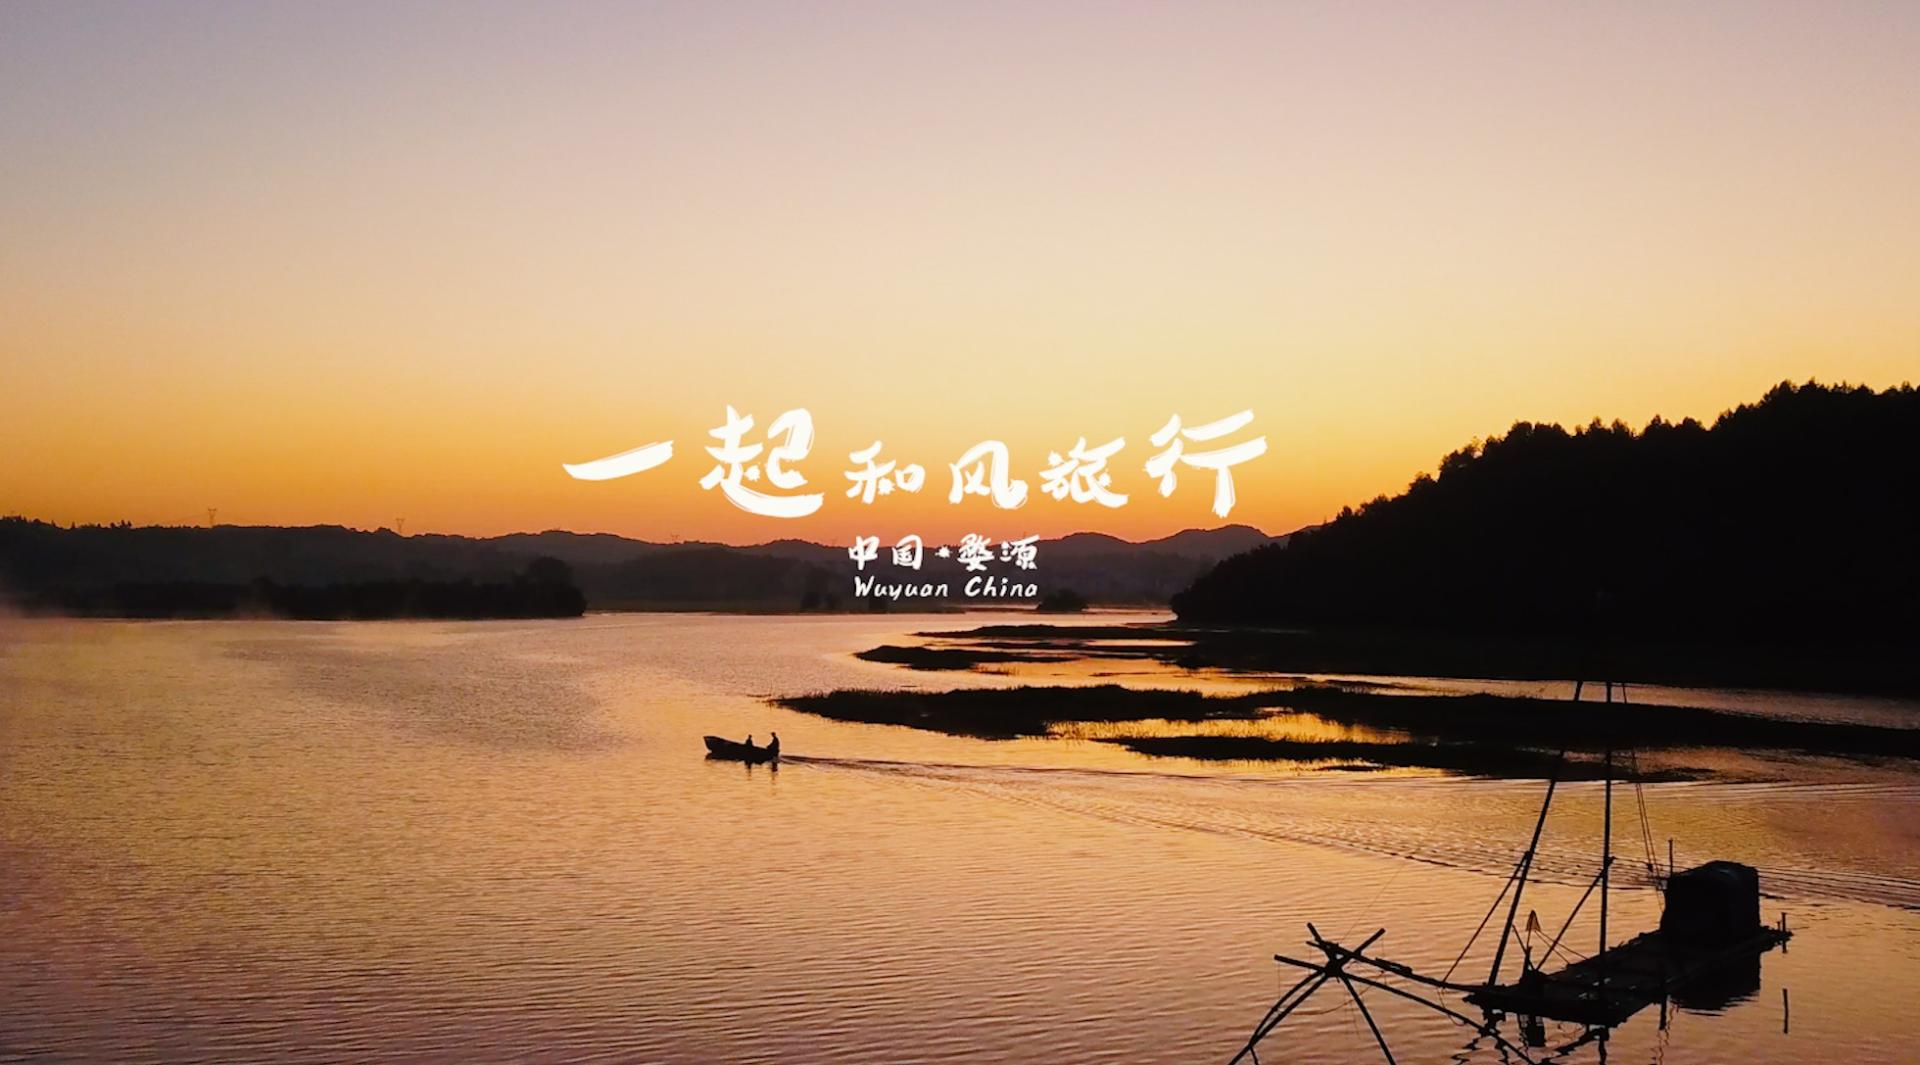 中国·婺源 城市旅游宣传片